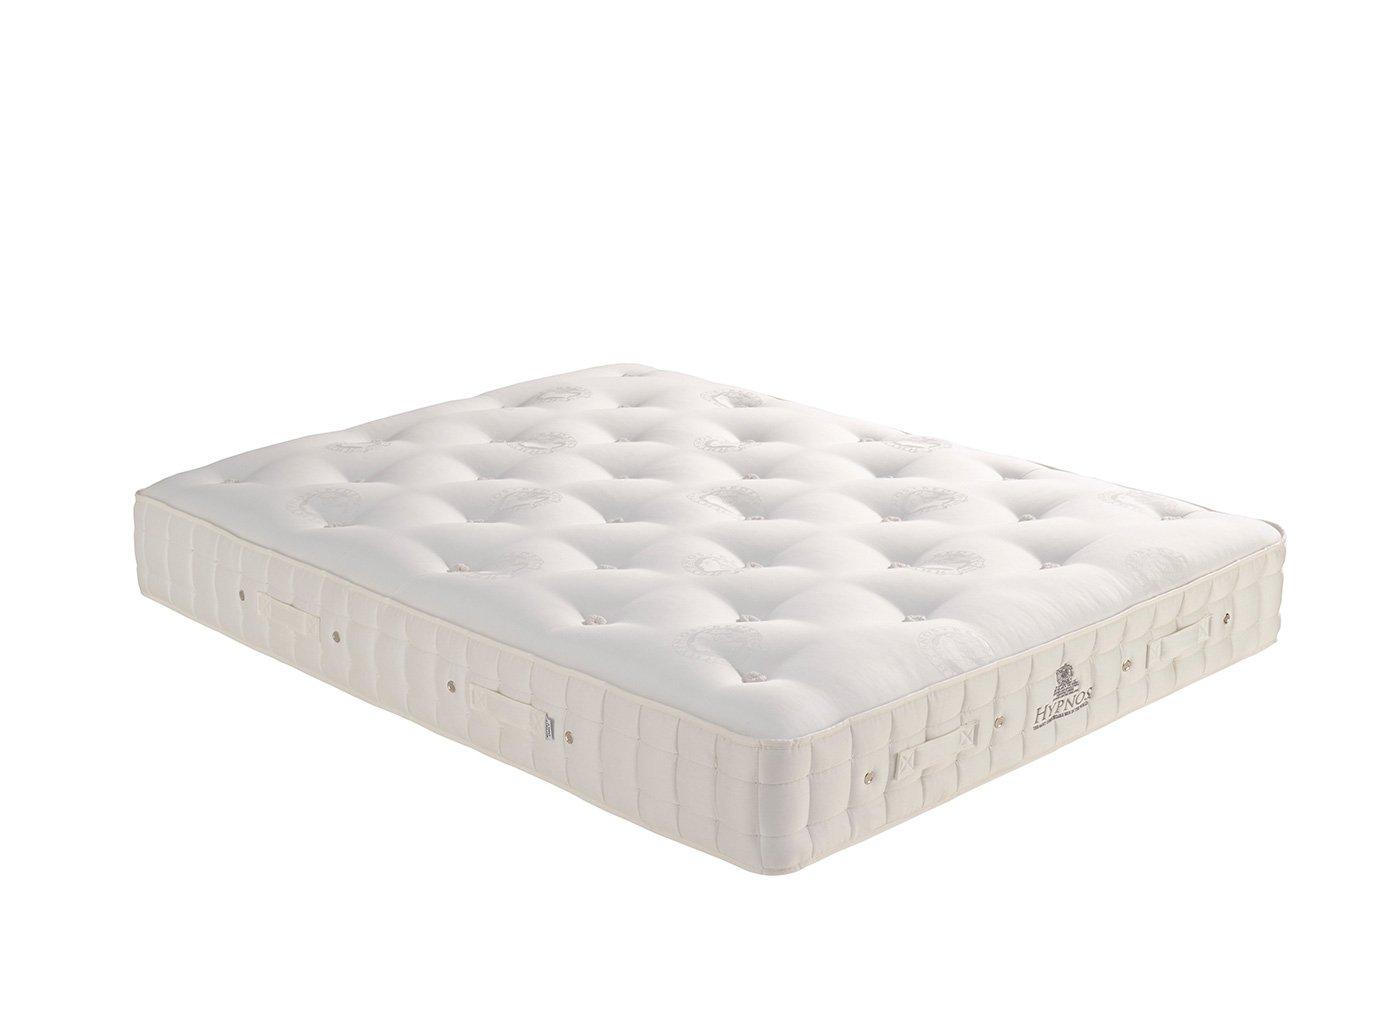 hypnos mattress reviews indicate superior quality